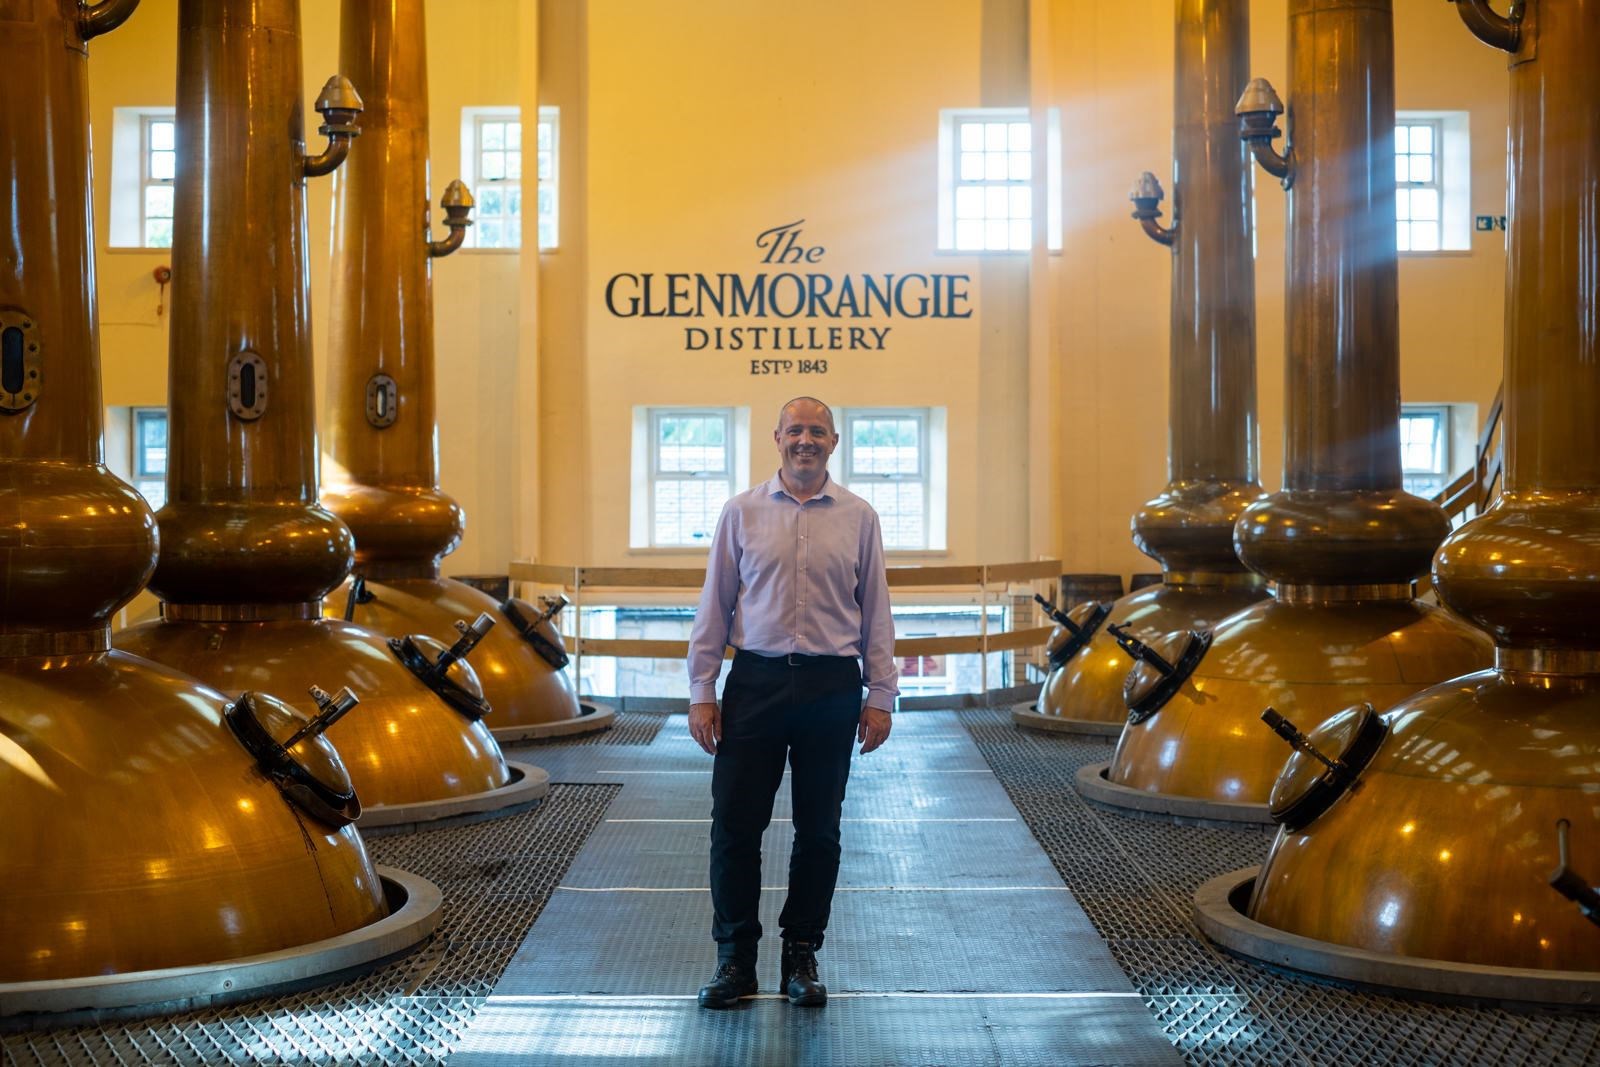 Ed thom, Distillery Manager at Glenmorangie Distillery.